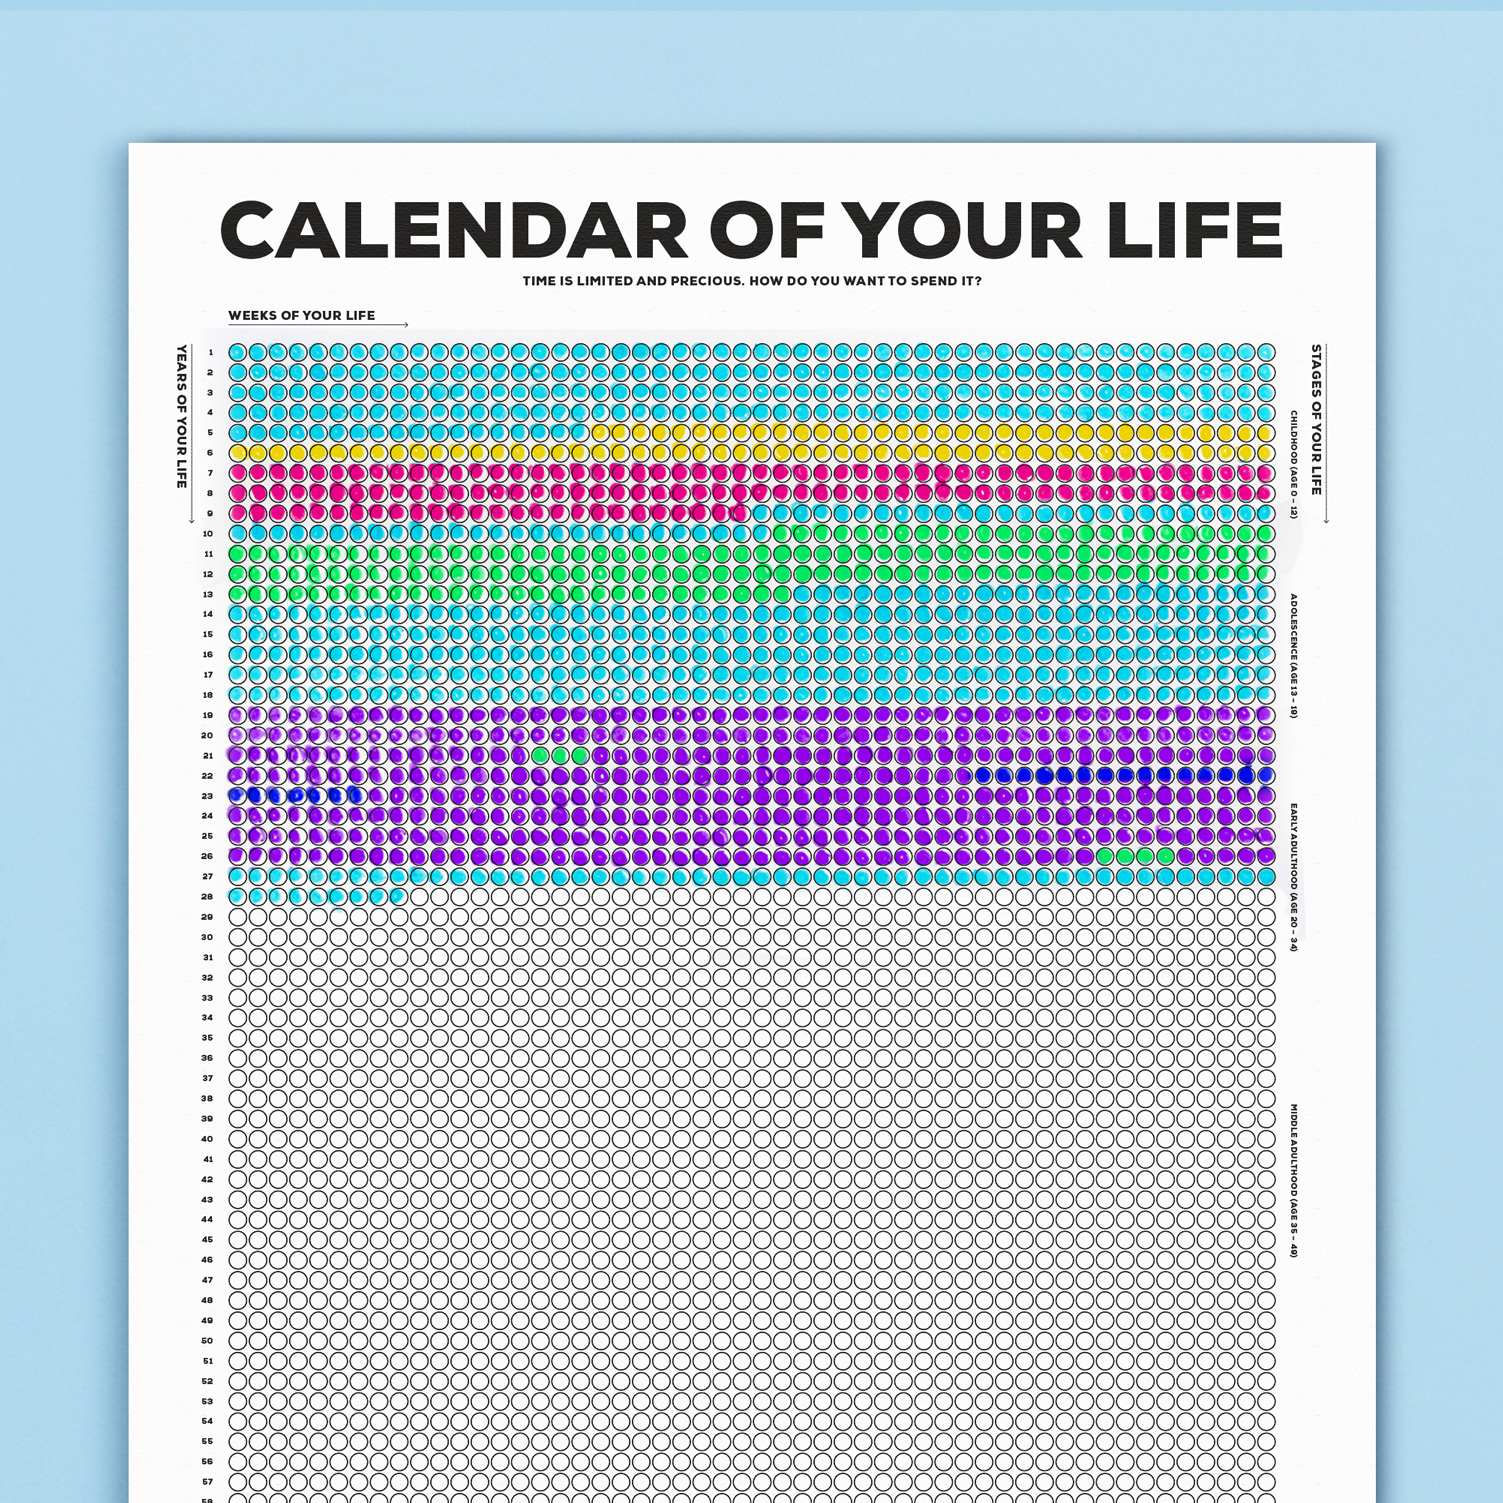 kurzgesagt-life-calendar